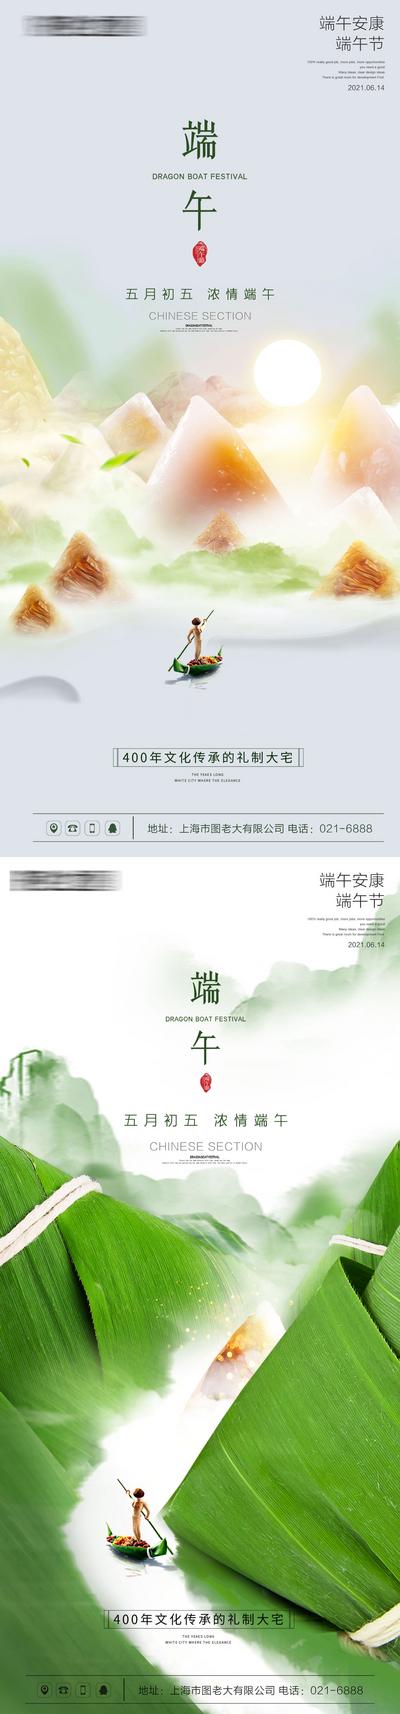 南门网 海报 房地产 端午节 中国传统节日 插画